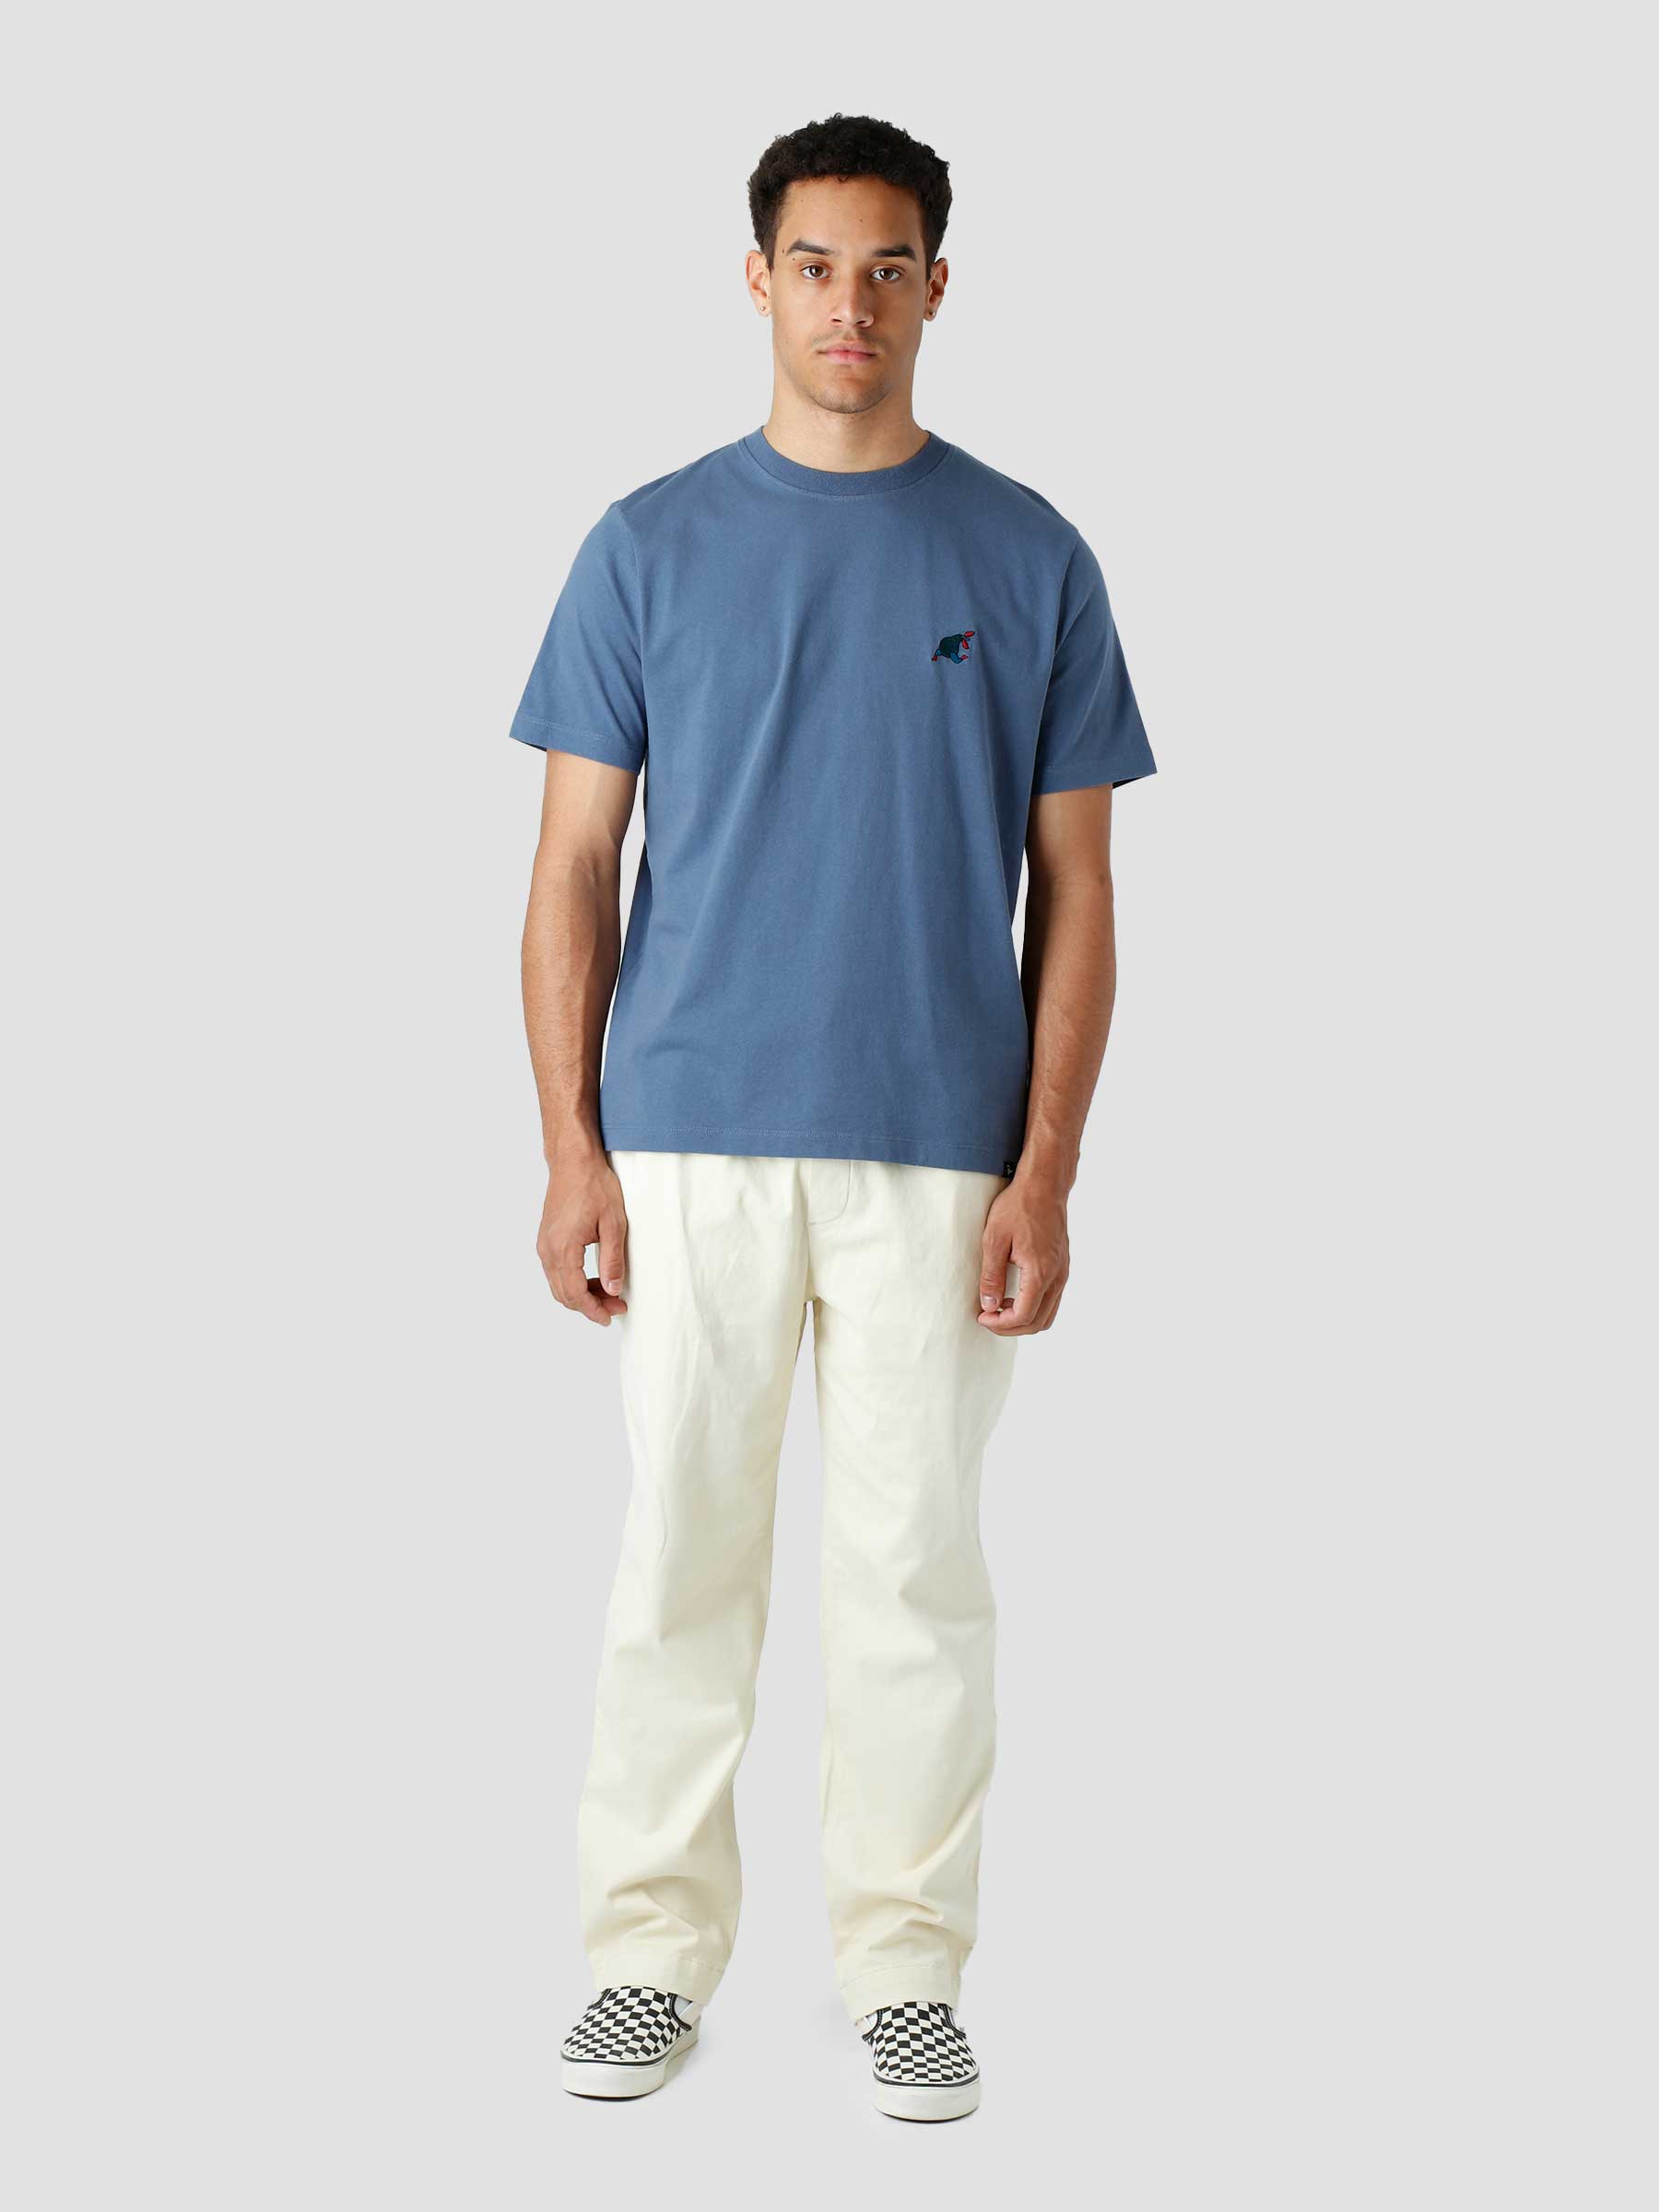 Blue Sitting Pear T-Shirt Indigo 47510